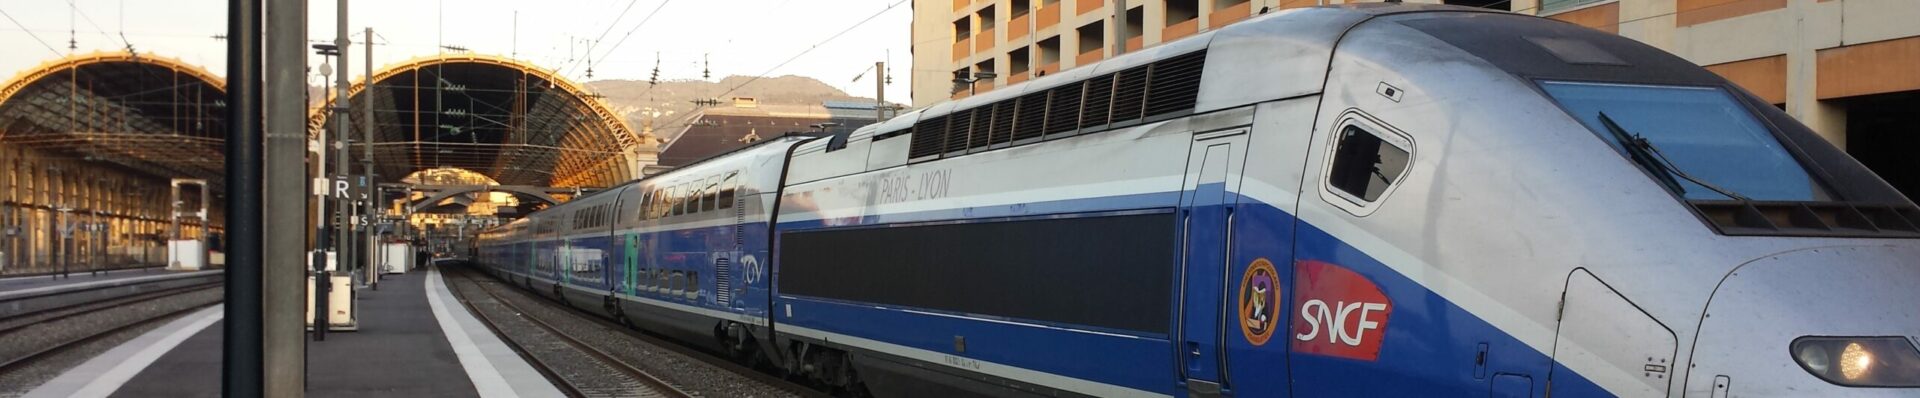 La Marseillaise: Un train de sénateur pour ligne à grande vitesse